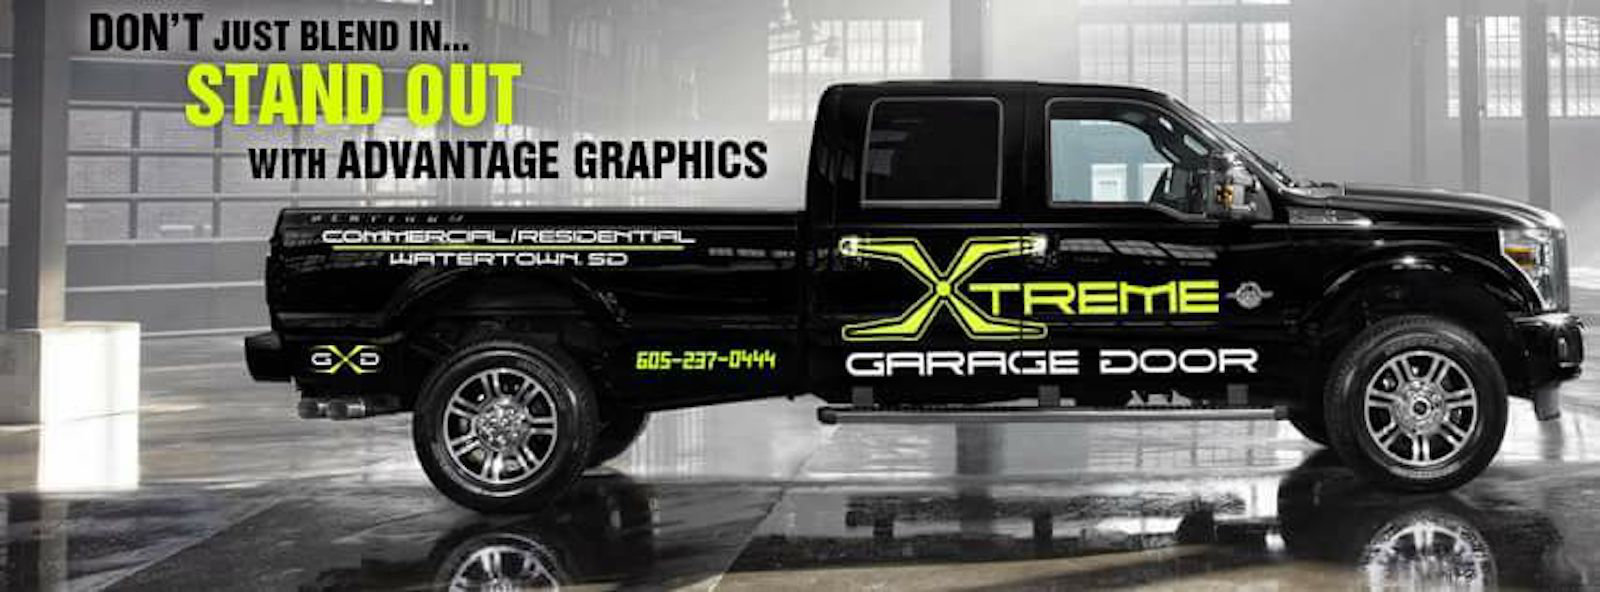 Xtreme Garage Door Truck